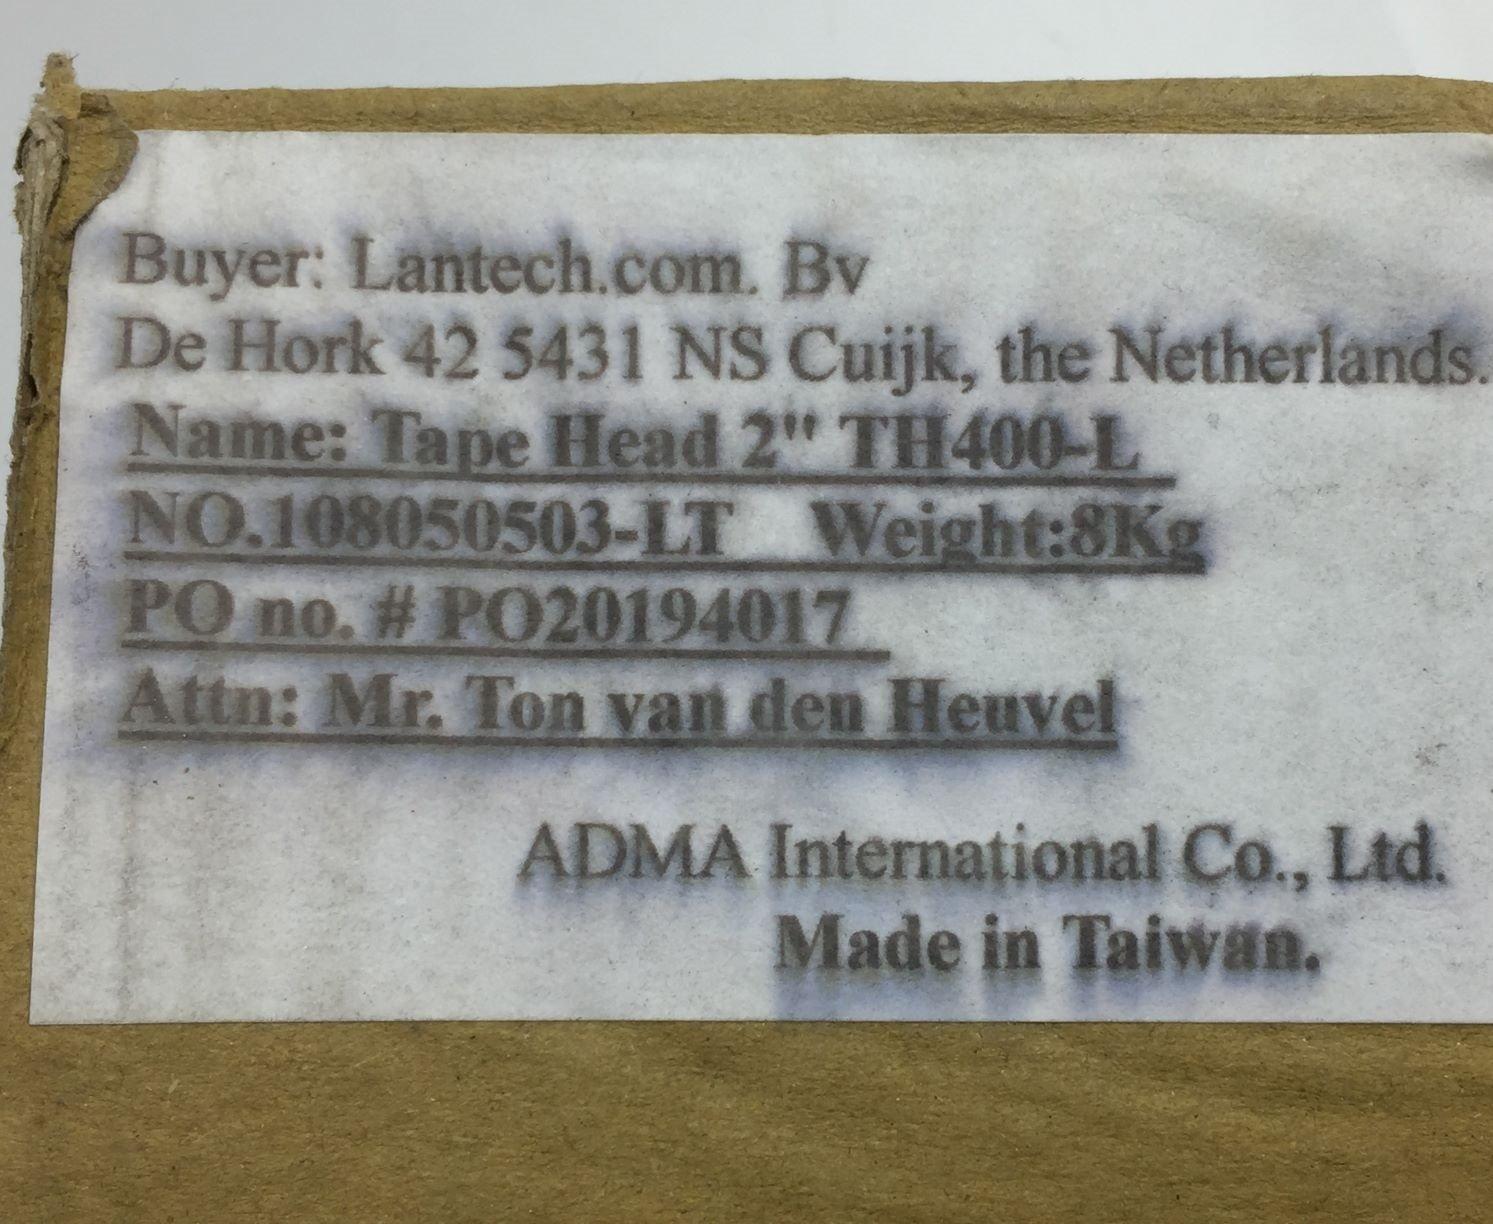 ADMA International TH400-L Tape Applicator 2